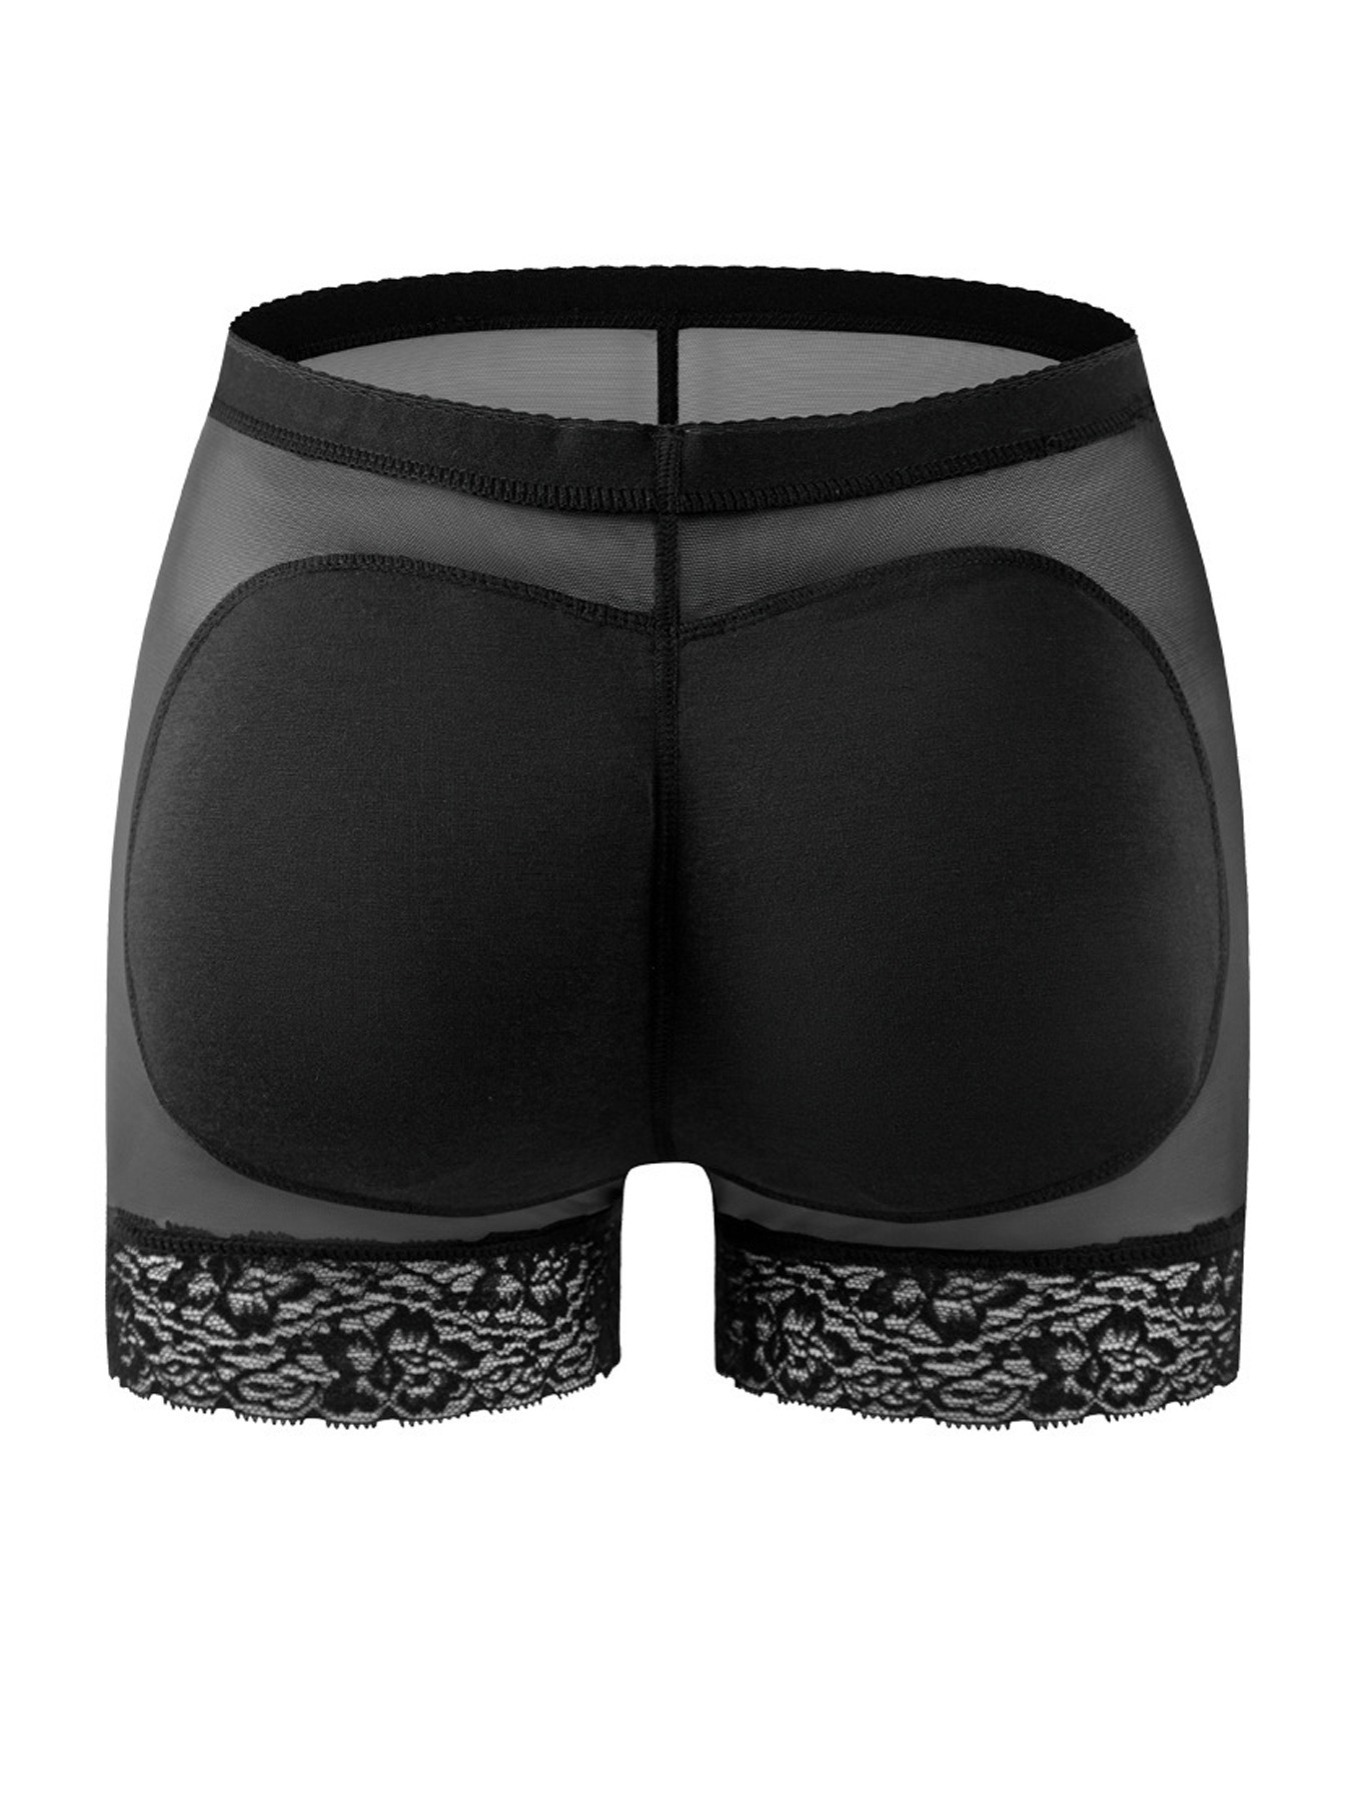 Women Body Shaper Padded Butt Lifter Panty Butt Hip Enhancer Fake Bum  Shapwear Briefs Push Up Shorts (ruipei)